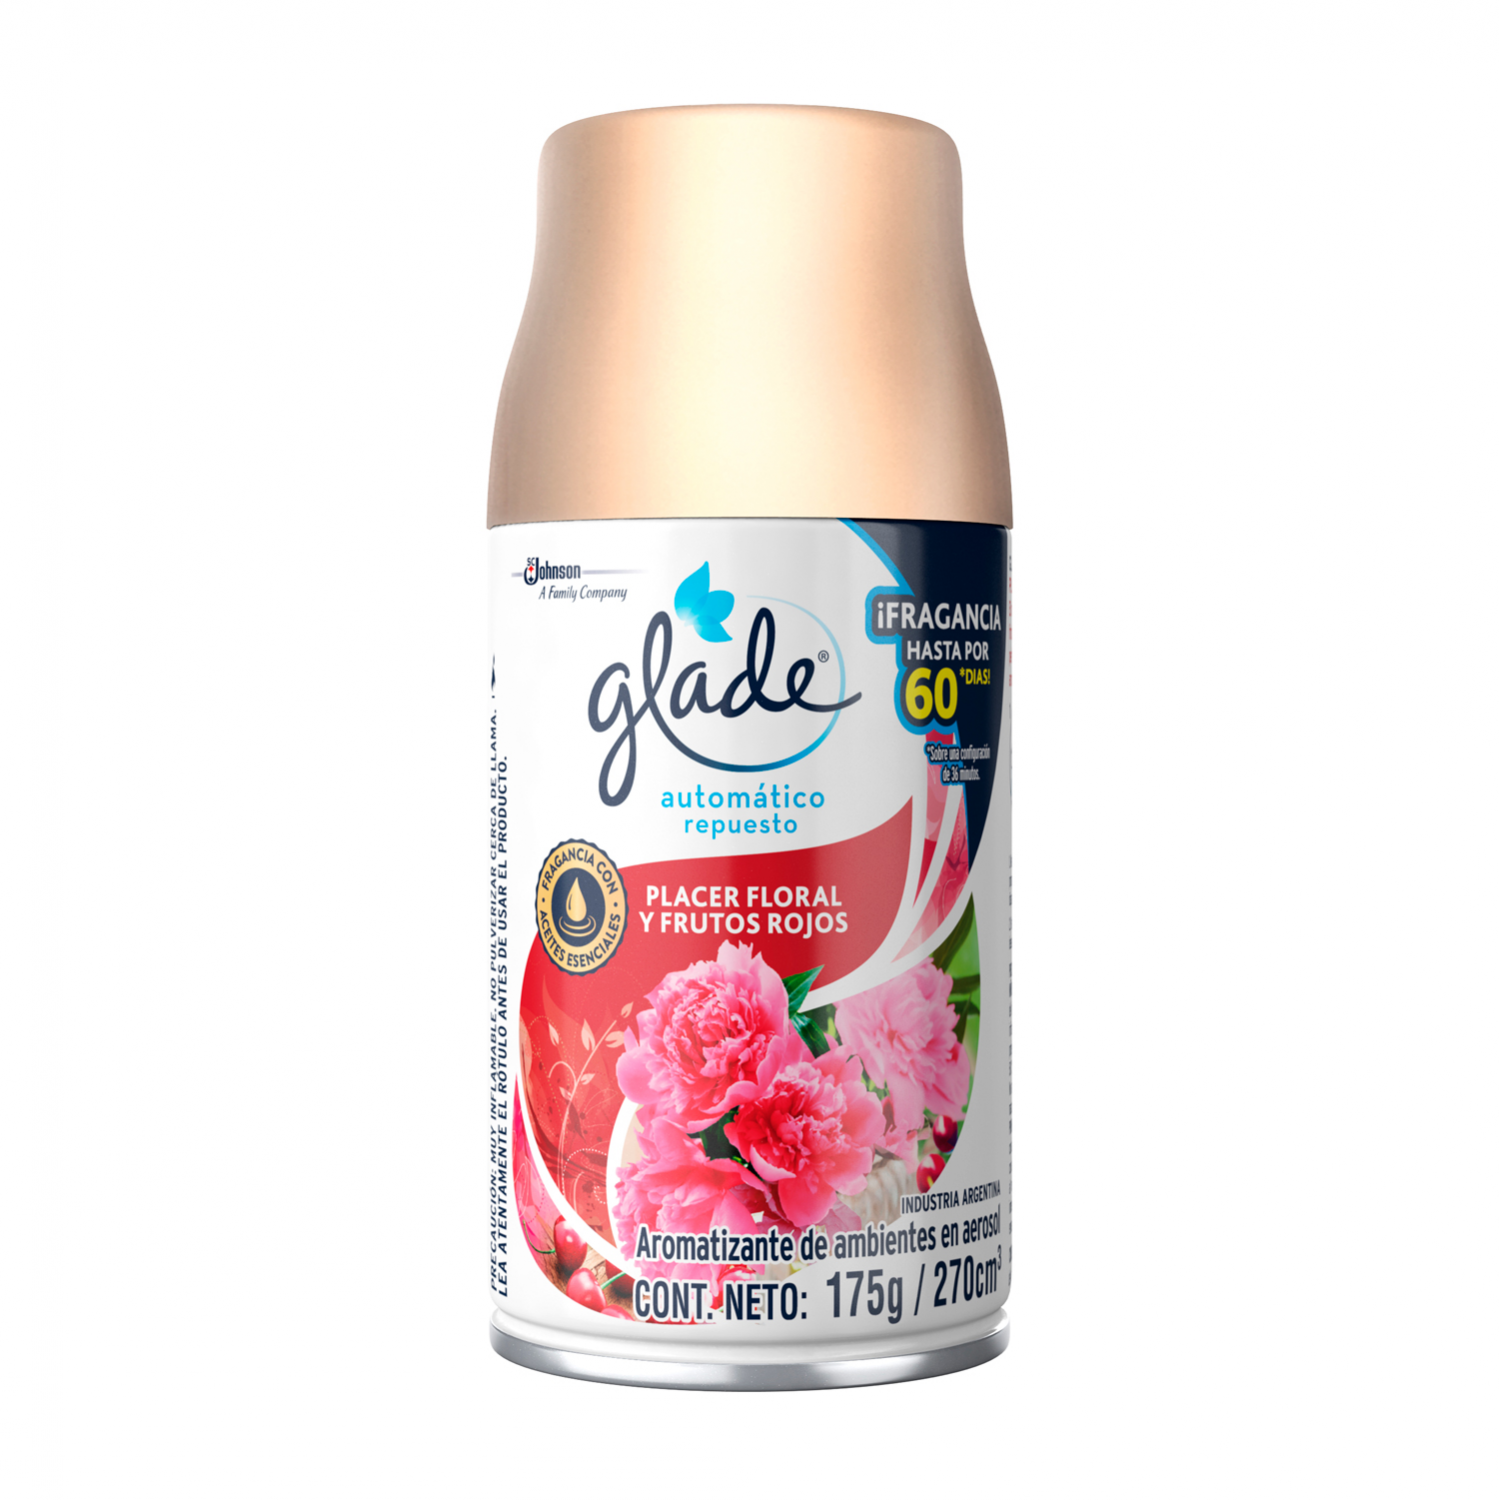 Glade® Automatico Placer floral y frutos rojos